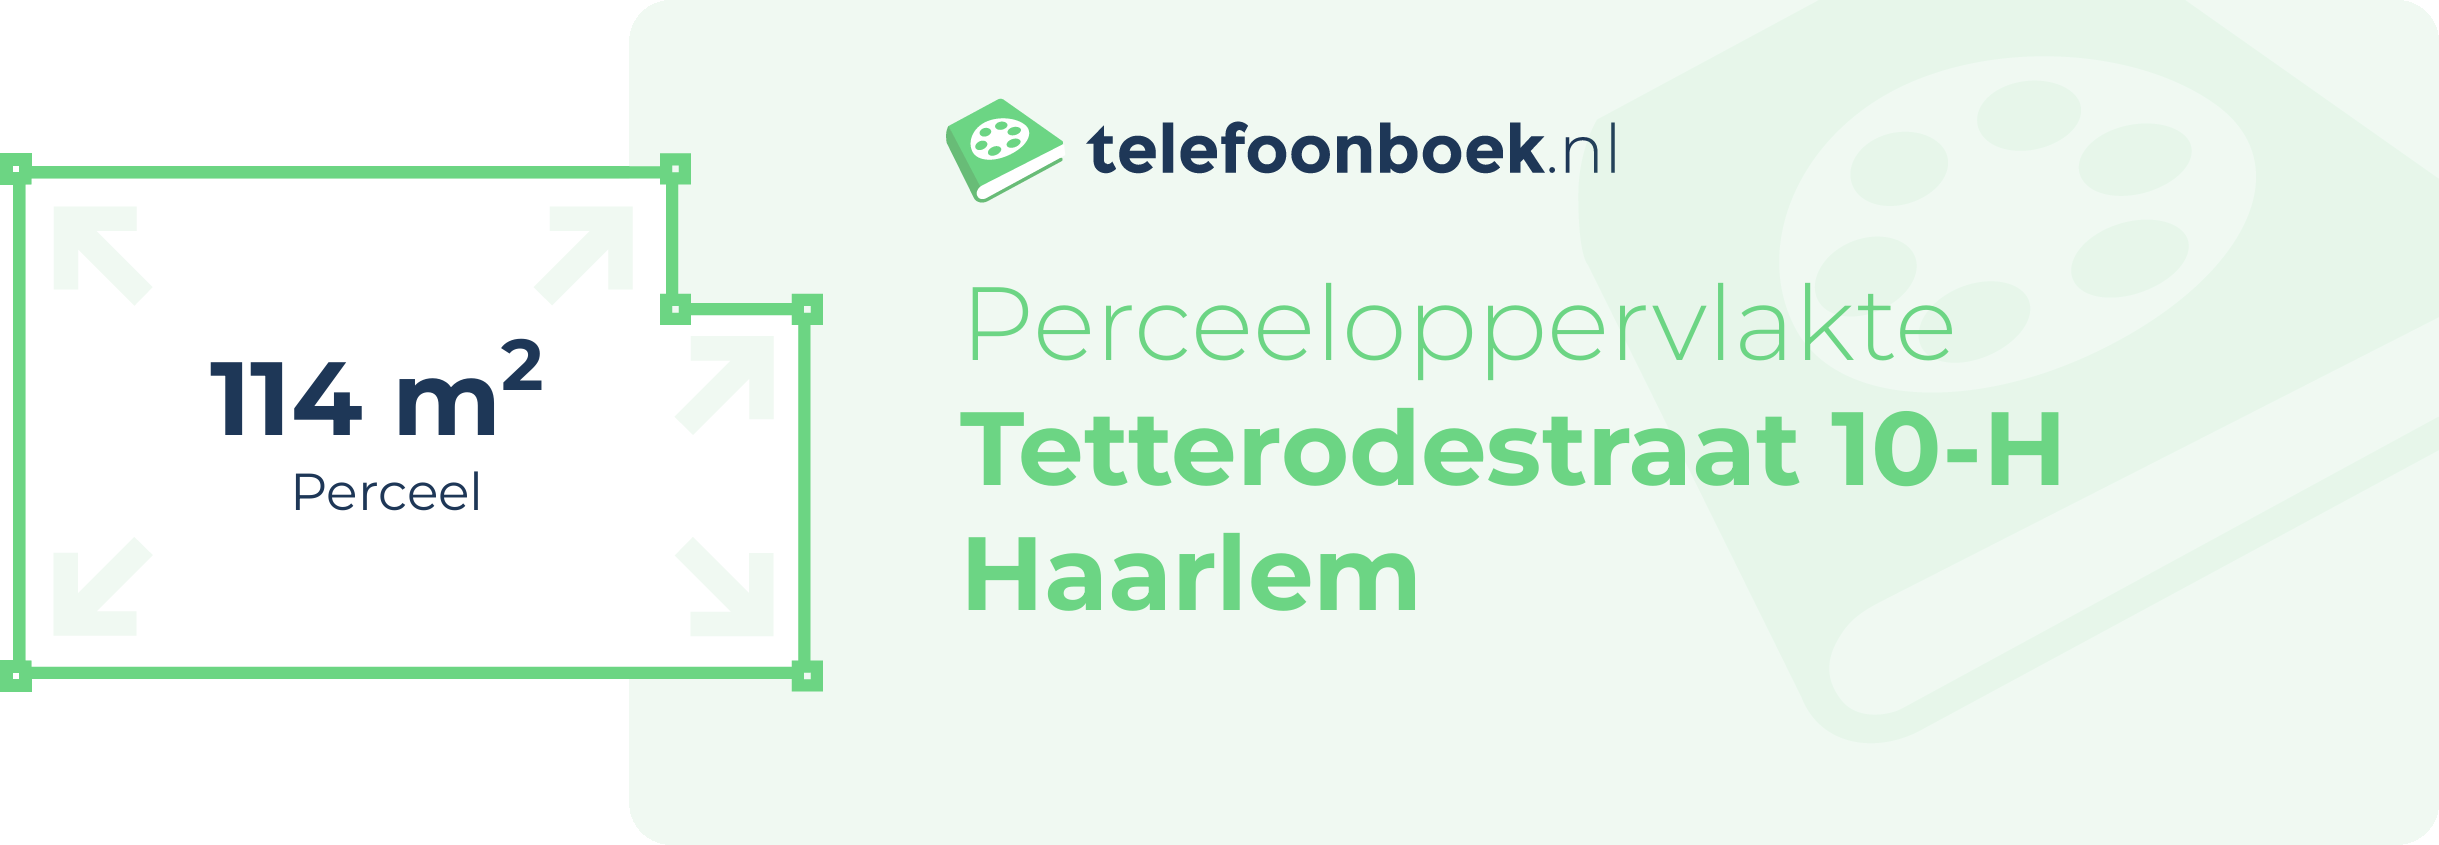 Perceeloppervlakte Tetterodestraat 10-H Haarlem